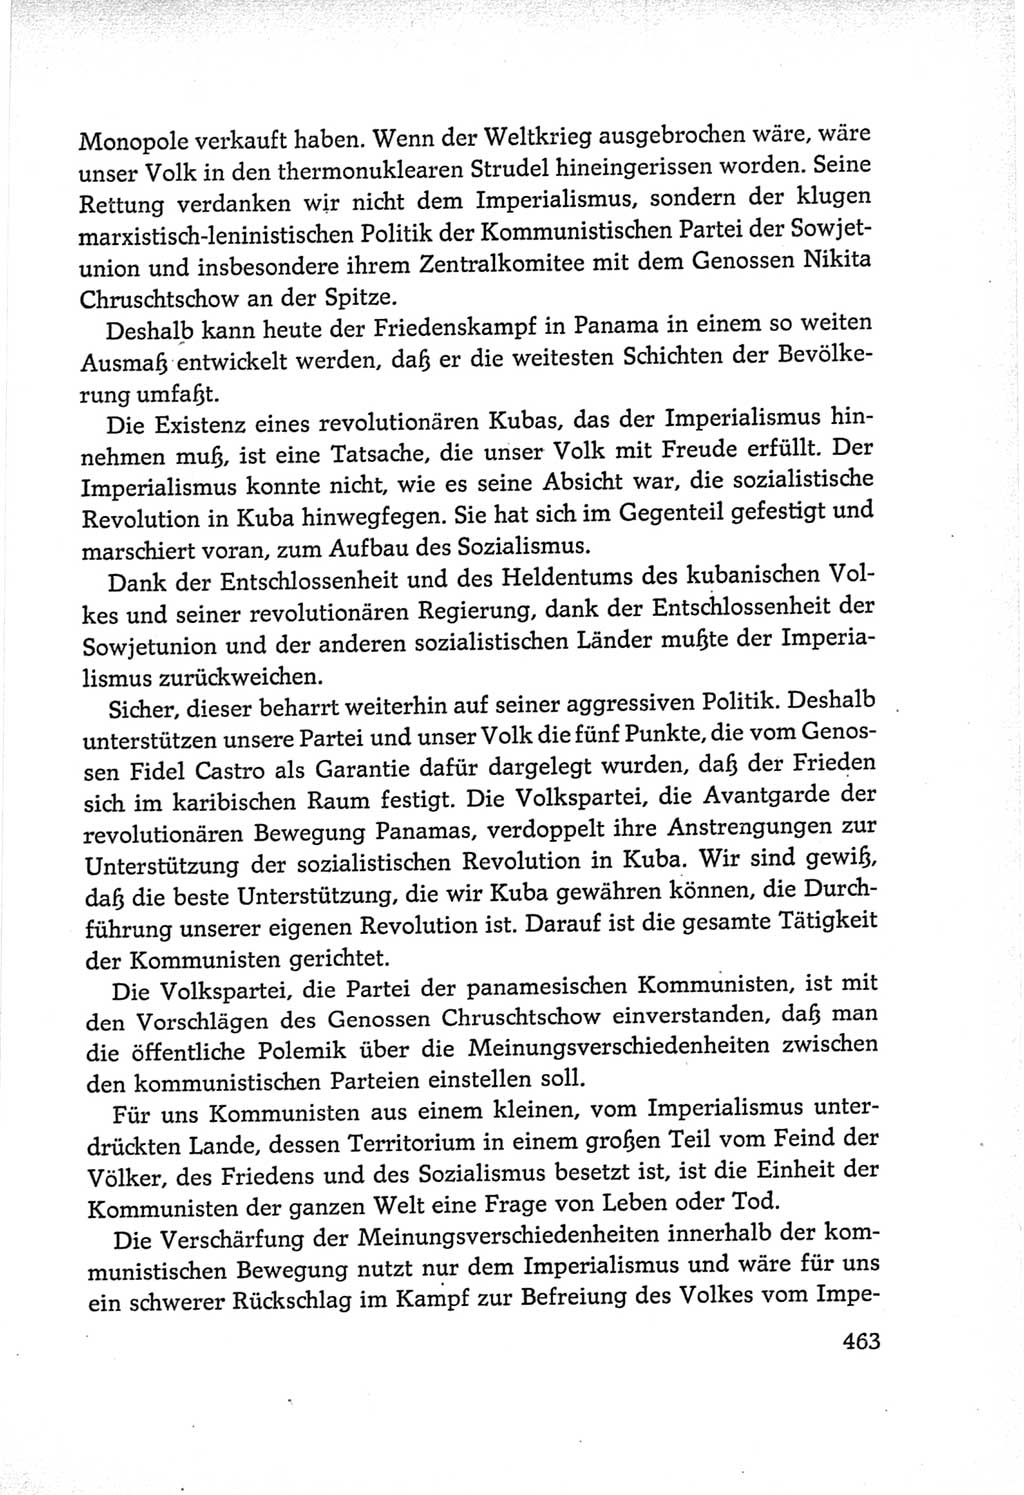 Protokoll der Verhandlungen des Ⅵ. Parteitages der Sozialistischen Einheitspartei Deutschlands (SED) [Deutsche Demokratische Republik (DDR)] 1963, Band Ⅱ, Seite 463 (Prot. Verh. Ⅵ. PT SED DDR 1963, Bd. Ⅱ, S. 463)